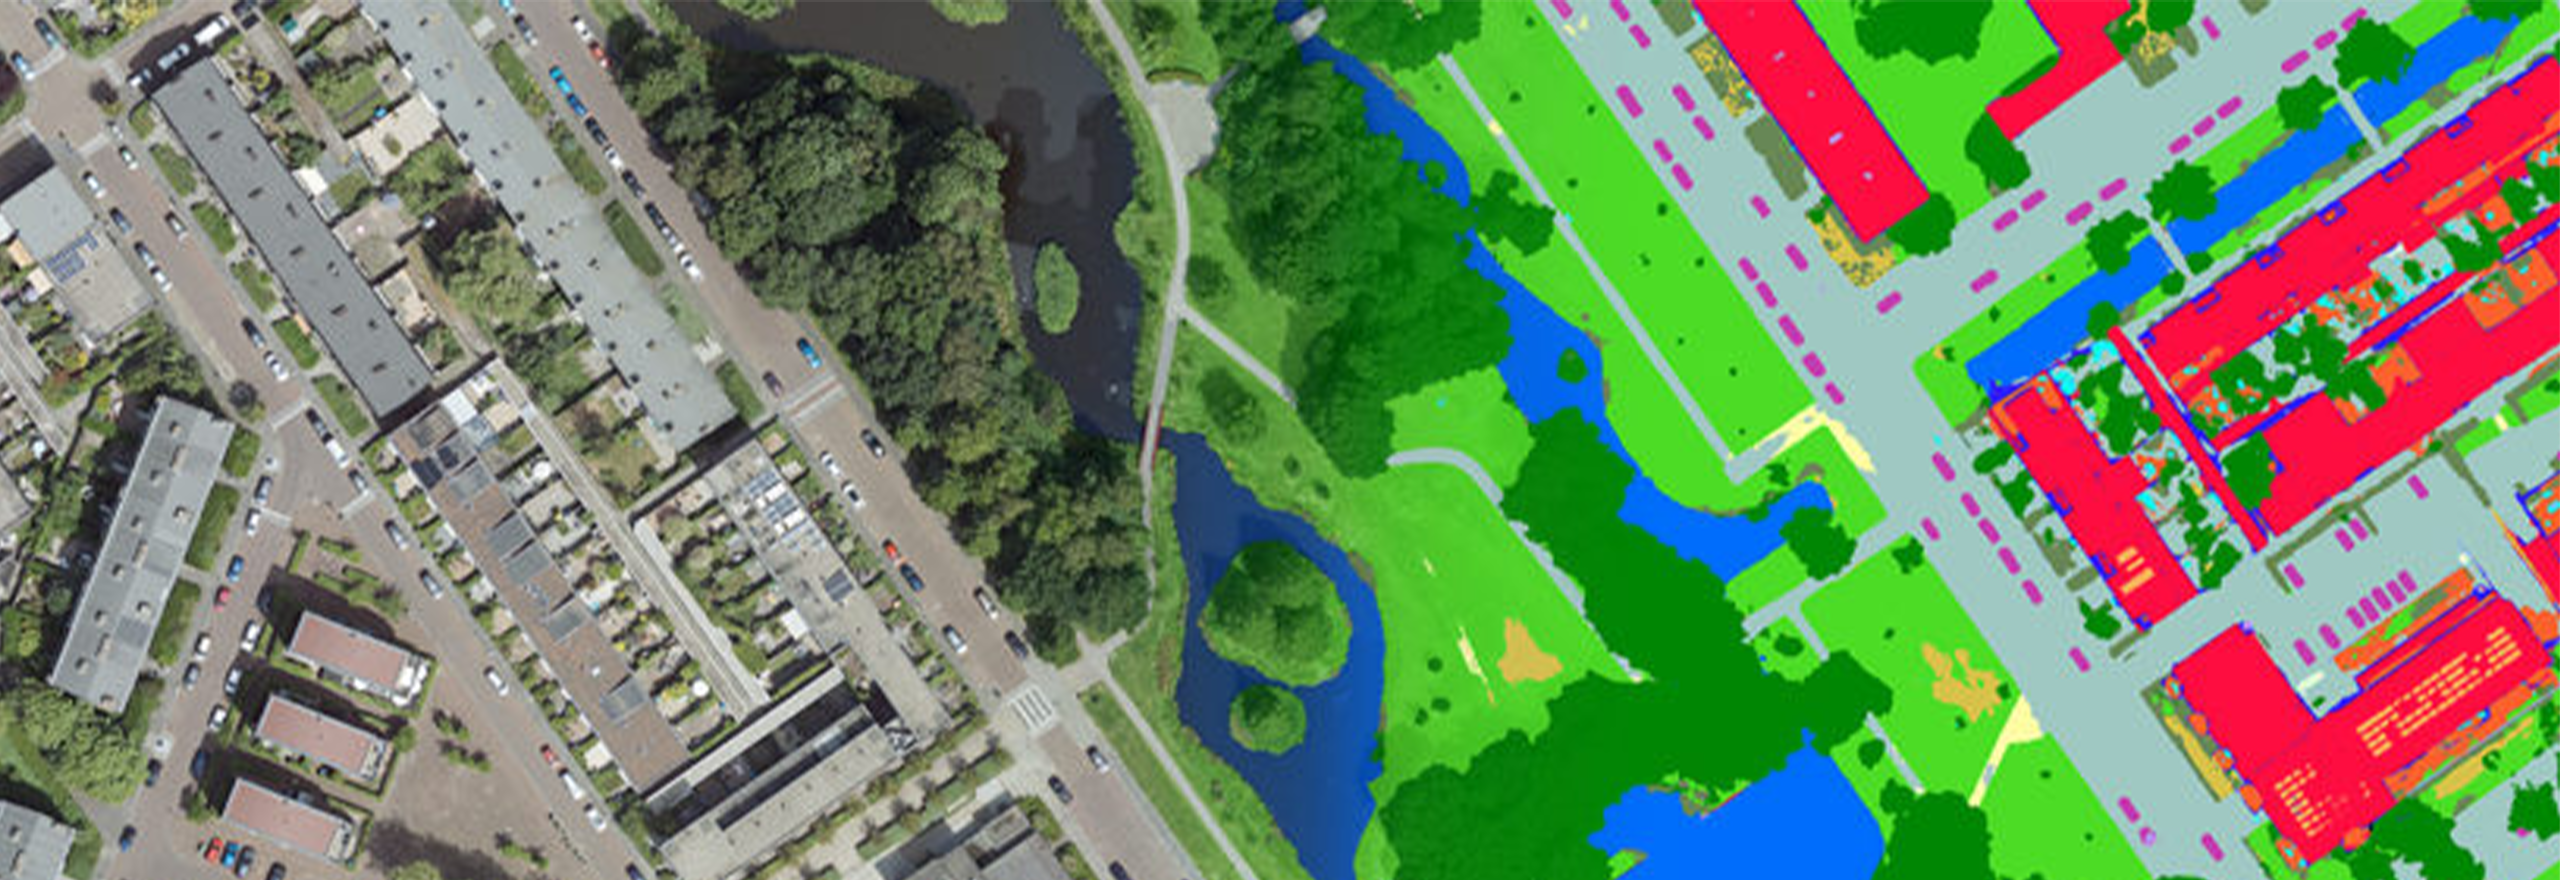 Imagens aéreas sobrepostas com o mapa de cobertura terrestre da inteligência artificial 